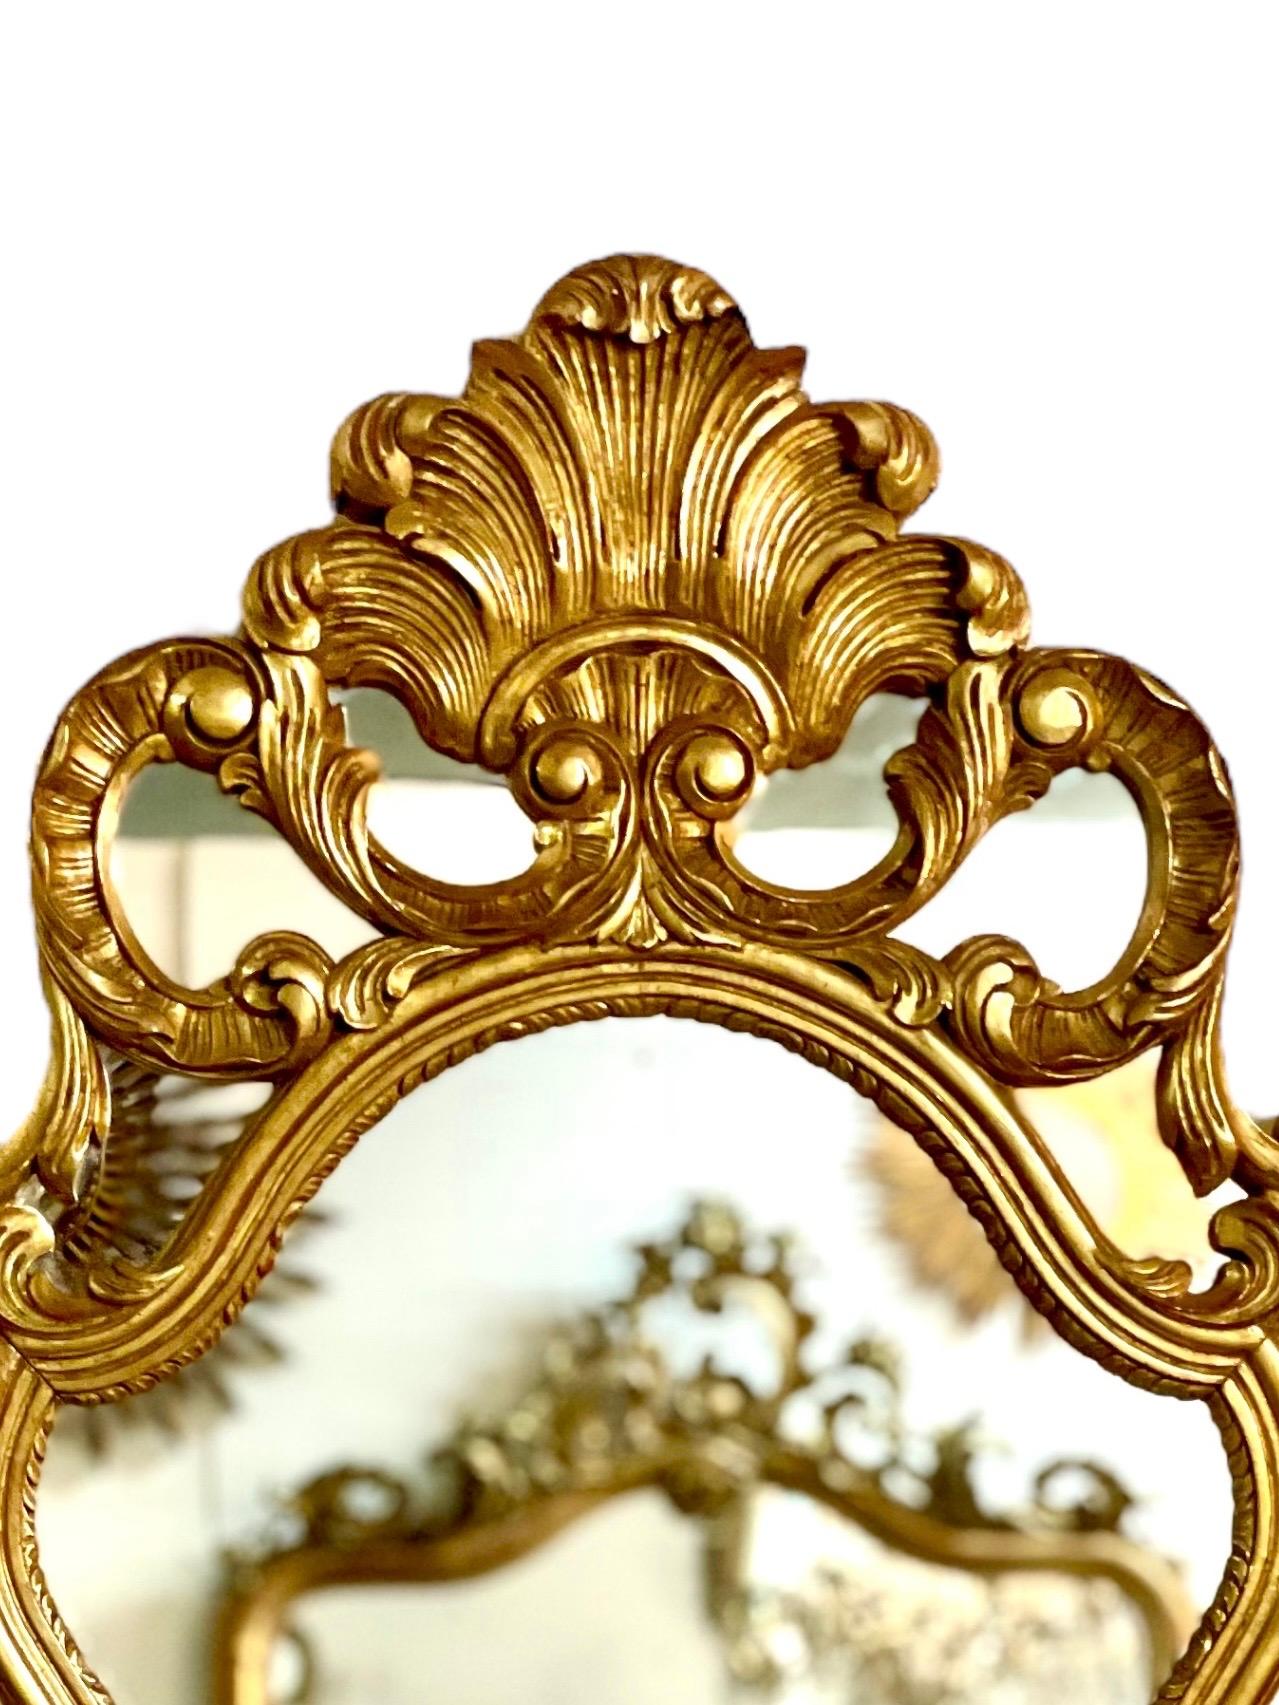 Dieser prächtige vergoldete Wandspiegel im Rokoko-Stil hat einen sehr verzierten Rahmen, der mit Spiegelplättchen besetzt ist und mit einem kunstvollen Wappen aus stilisierten Federn gekrönt wird. Dieser große und beeindruckende Spiegel aus dem 20.